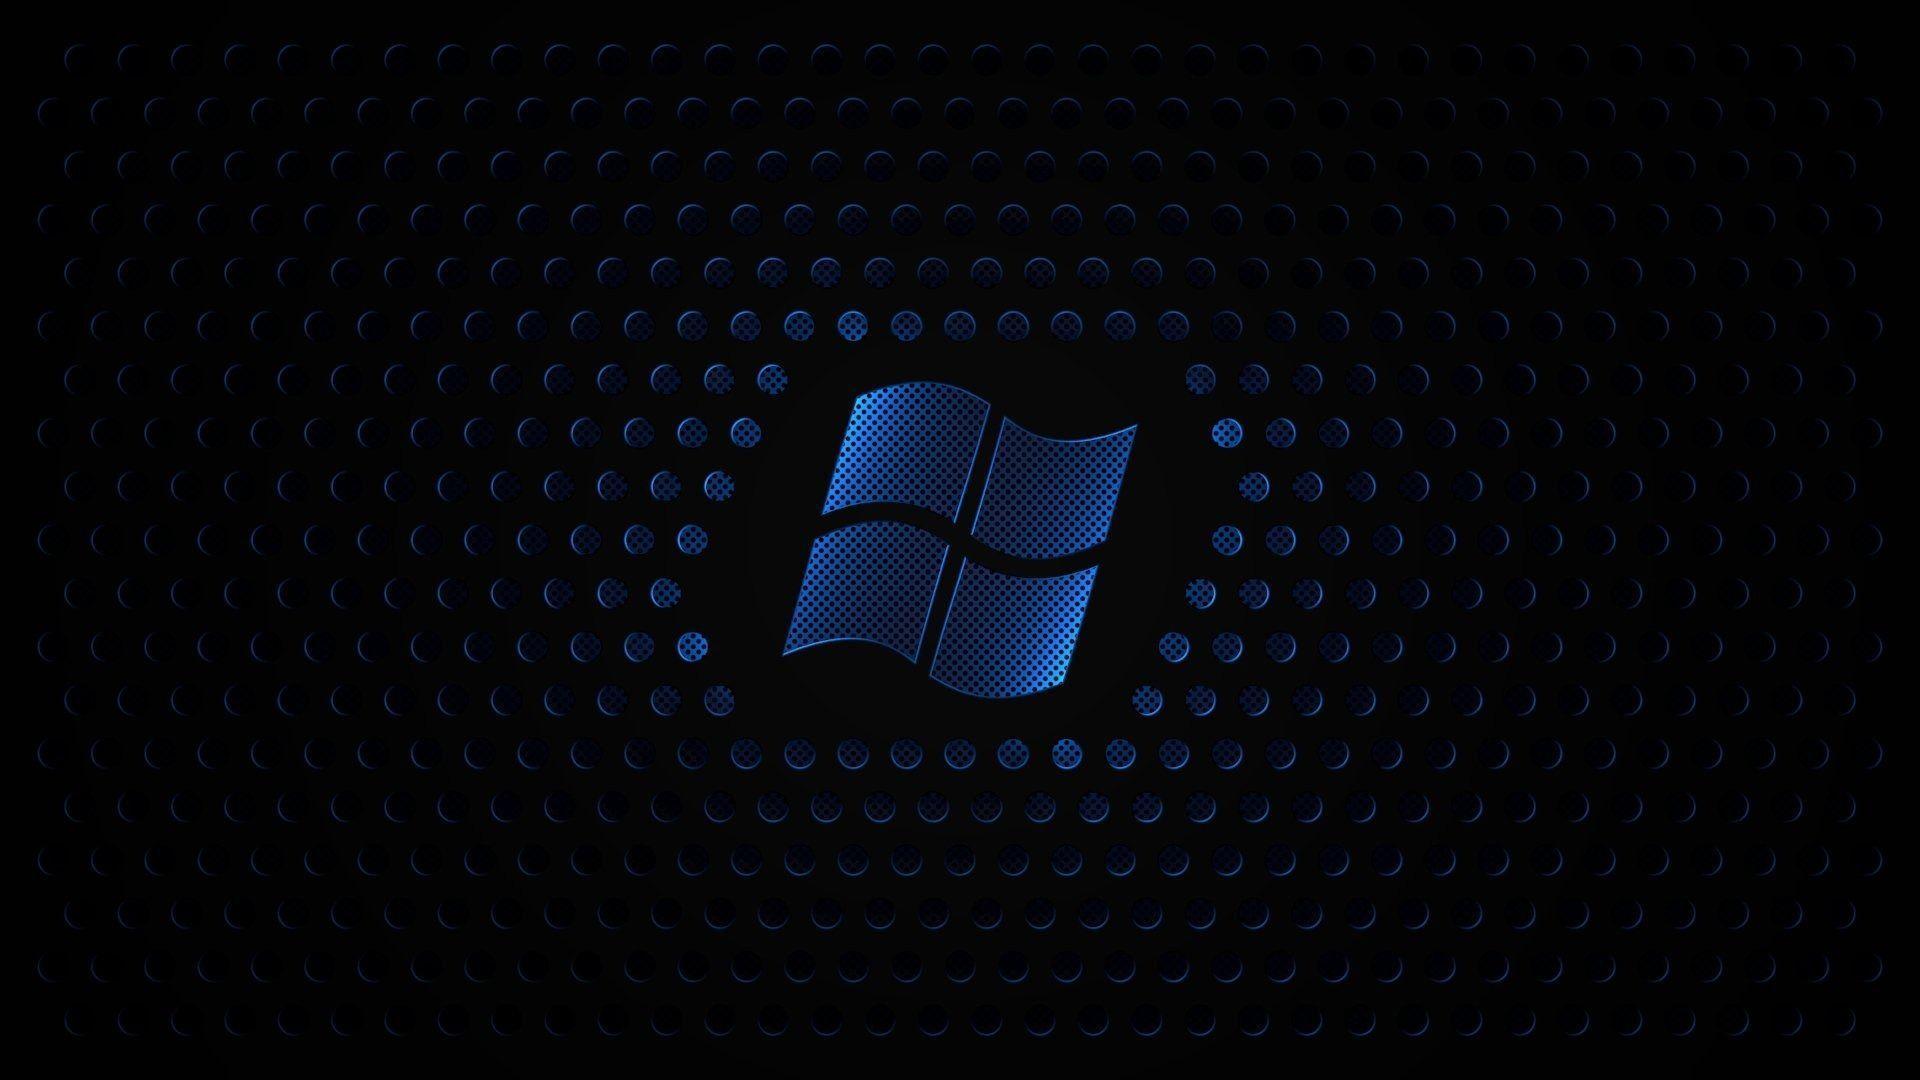 Deep Blue Windows 7 1080p Desktop Wallpaper. High Quality PC